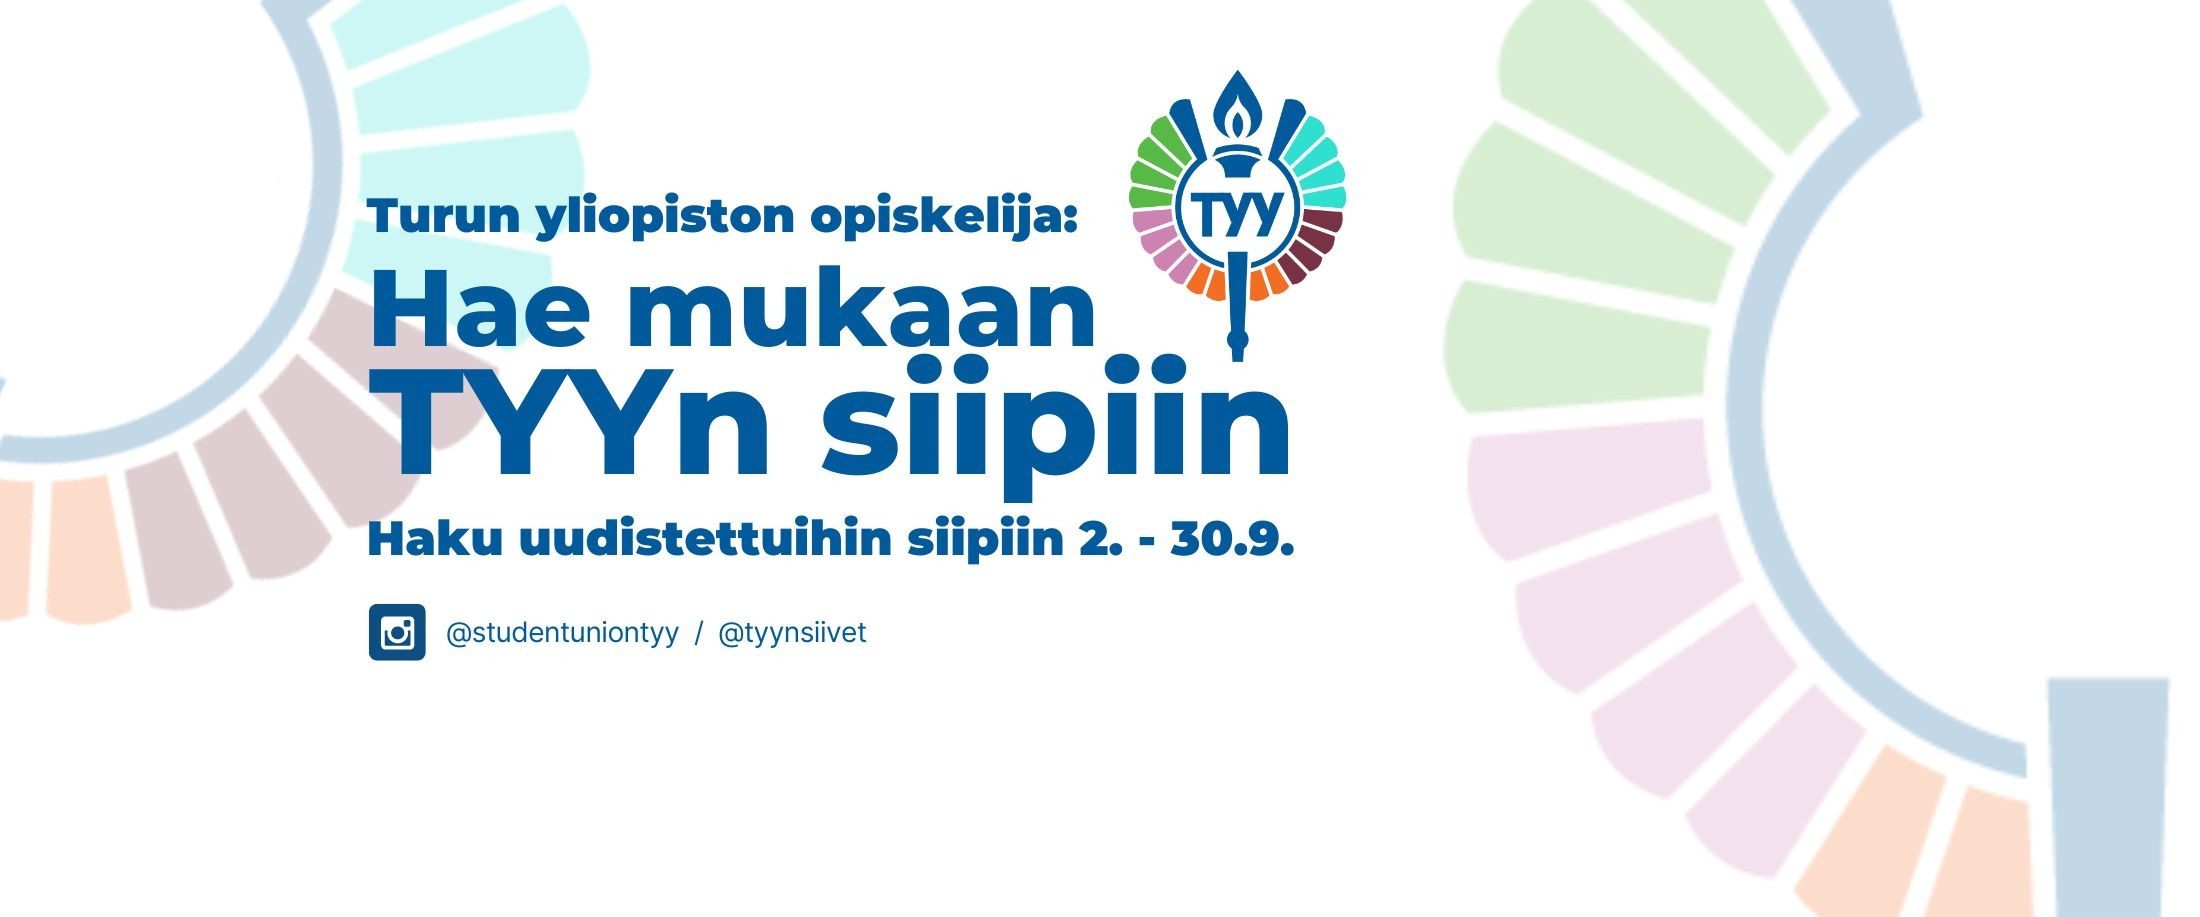 Turun yliopiston opiskelija: Hae mukaan TYYn siipiin - Haku uudistettuihin siipiin 2.-30-9.